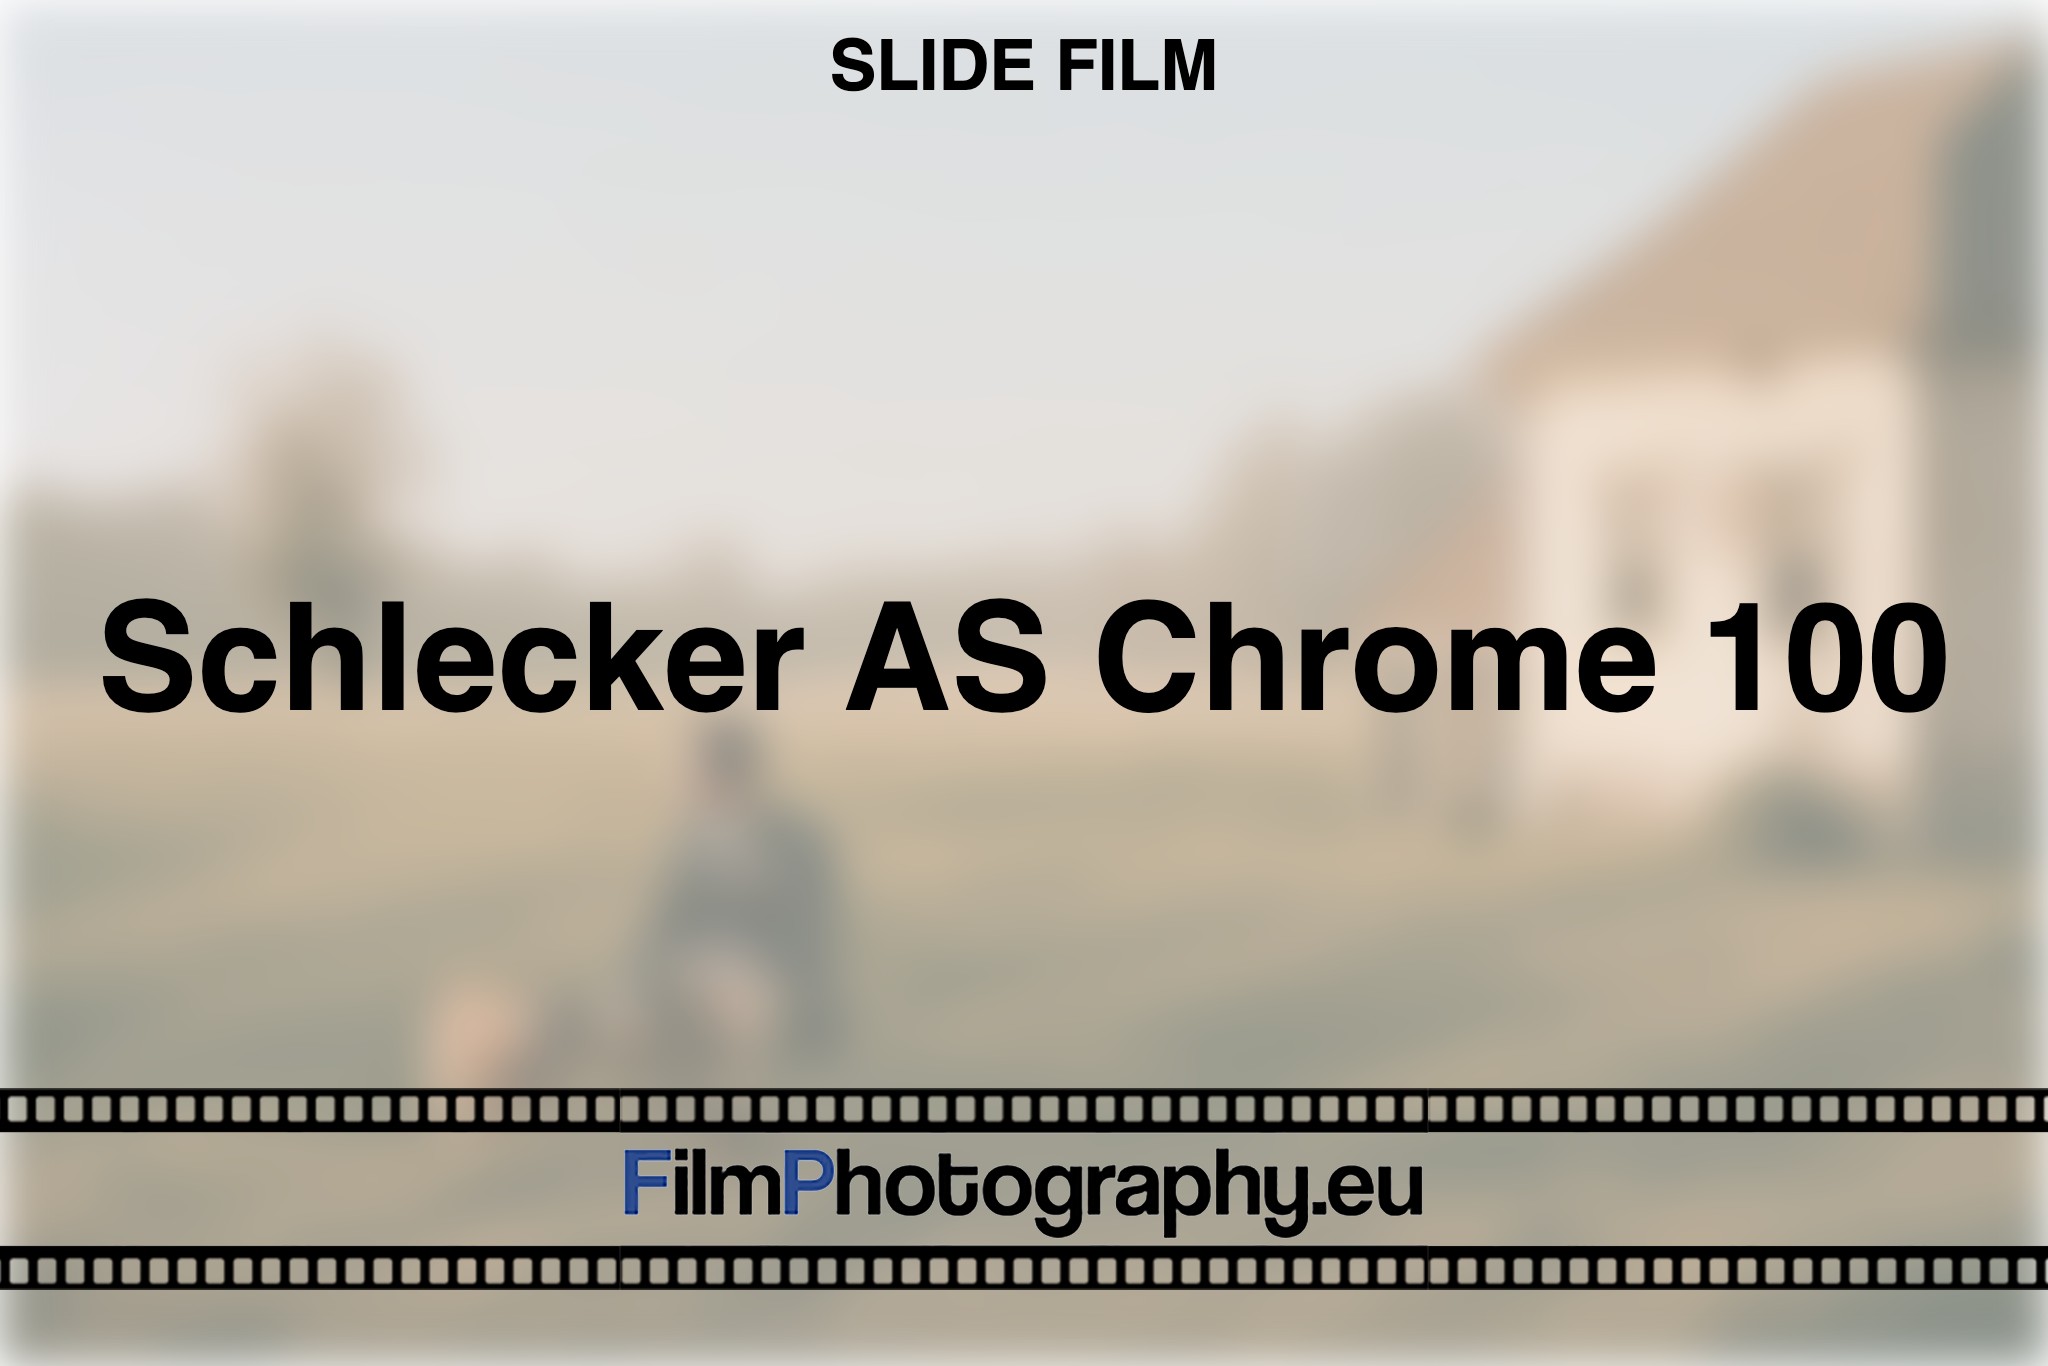 schlecker-as-chrome-100-slide-film-bnv